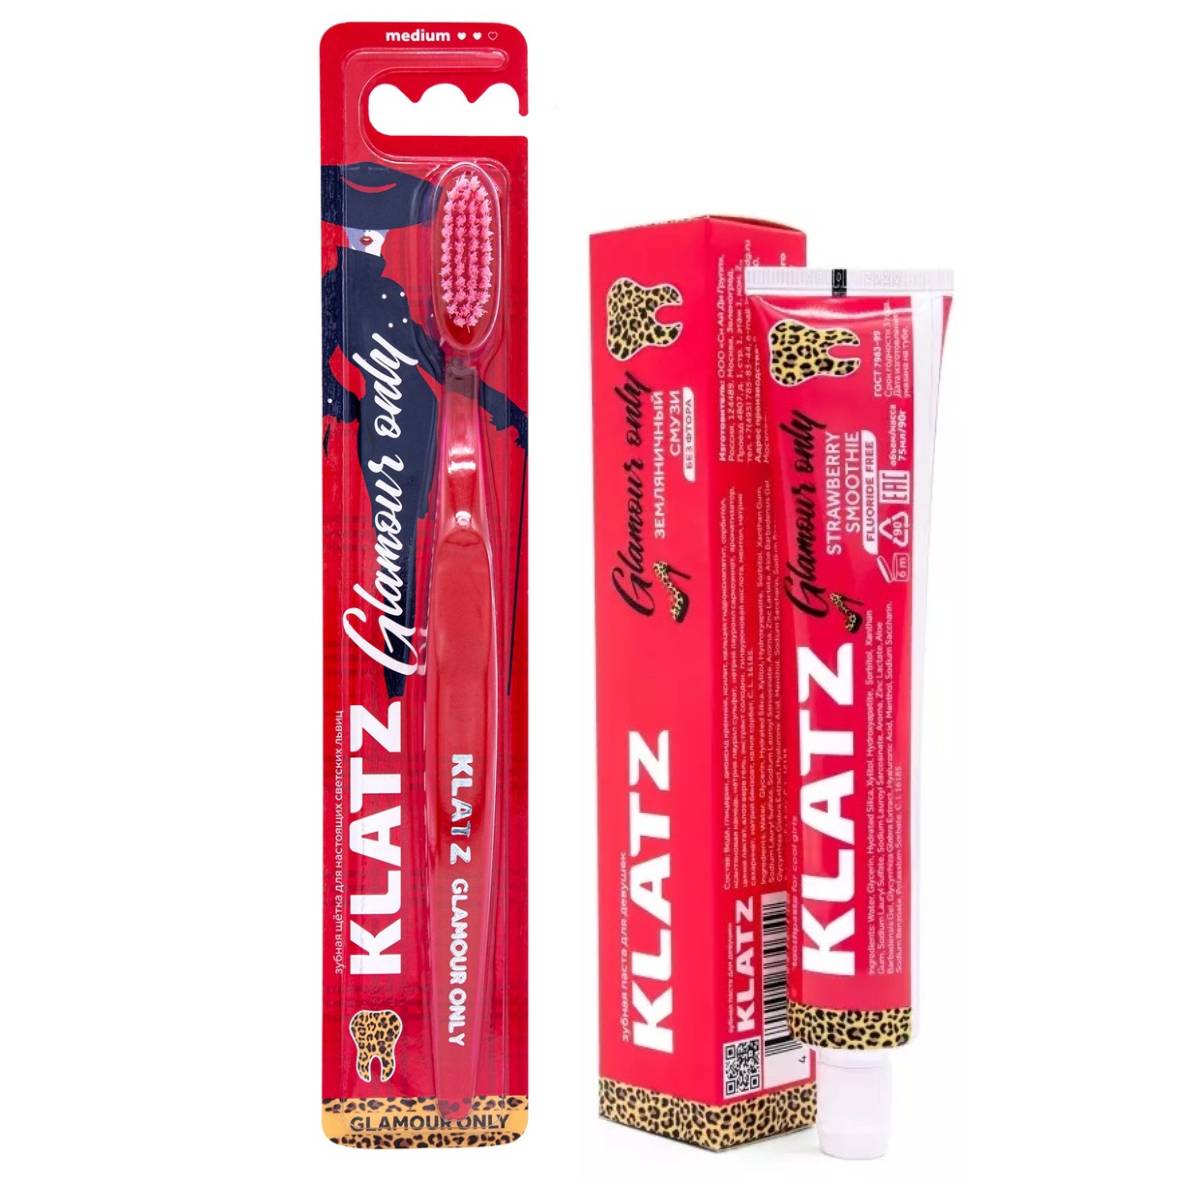 Klatz Набор для девушек Glamour Only: зубная паста Земляничный смузи 75 мл + Зубная щетка (Klatz, Glamour Only)